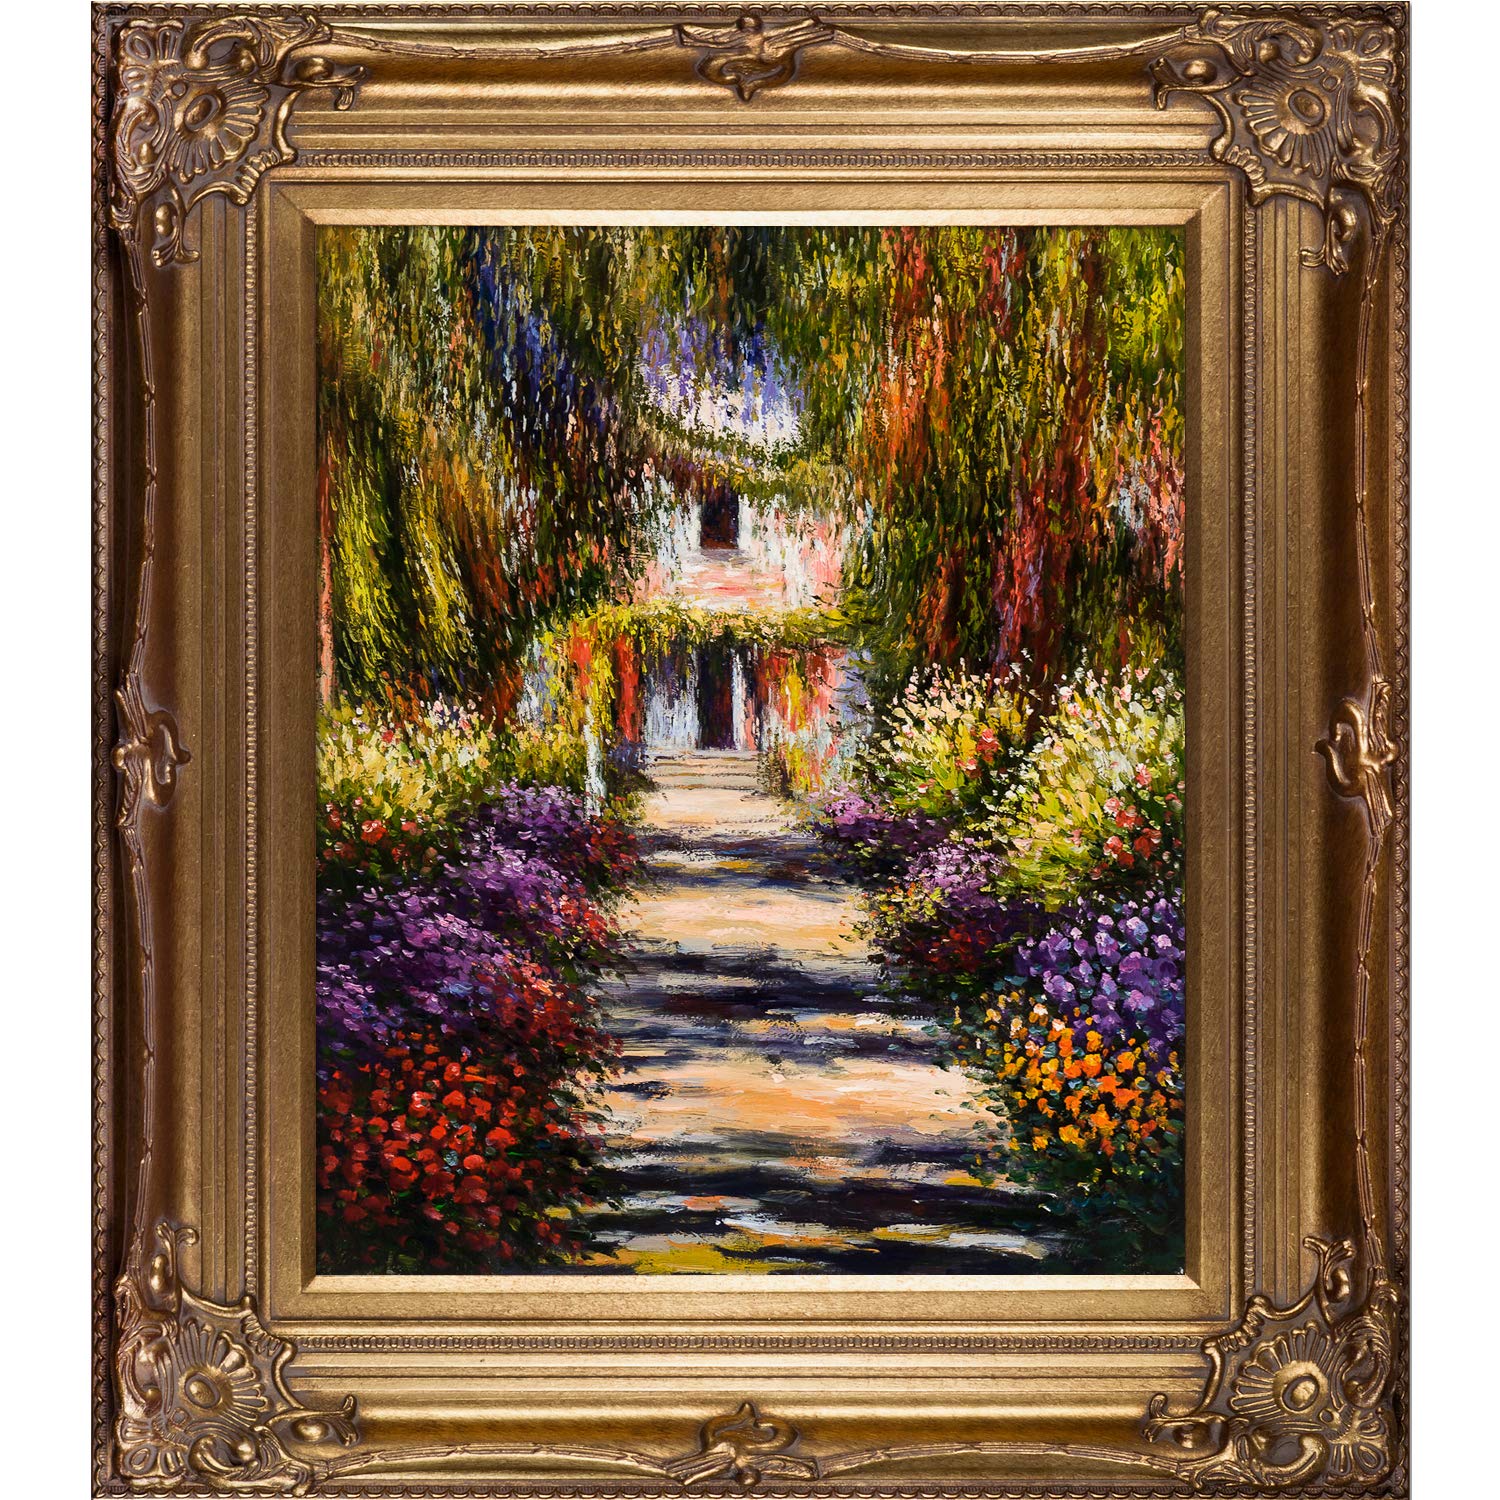 Claude Monet Garten Neu Overstockart Mon858 Fr 801g20x24 Garden Path at Giverny